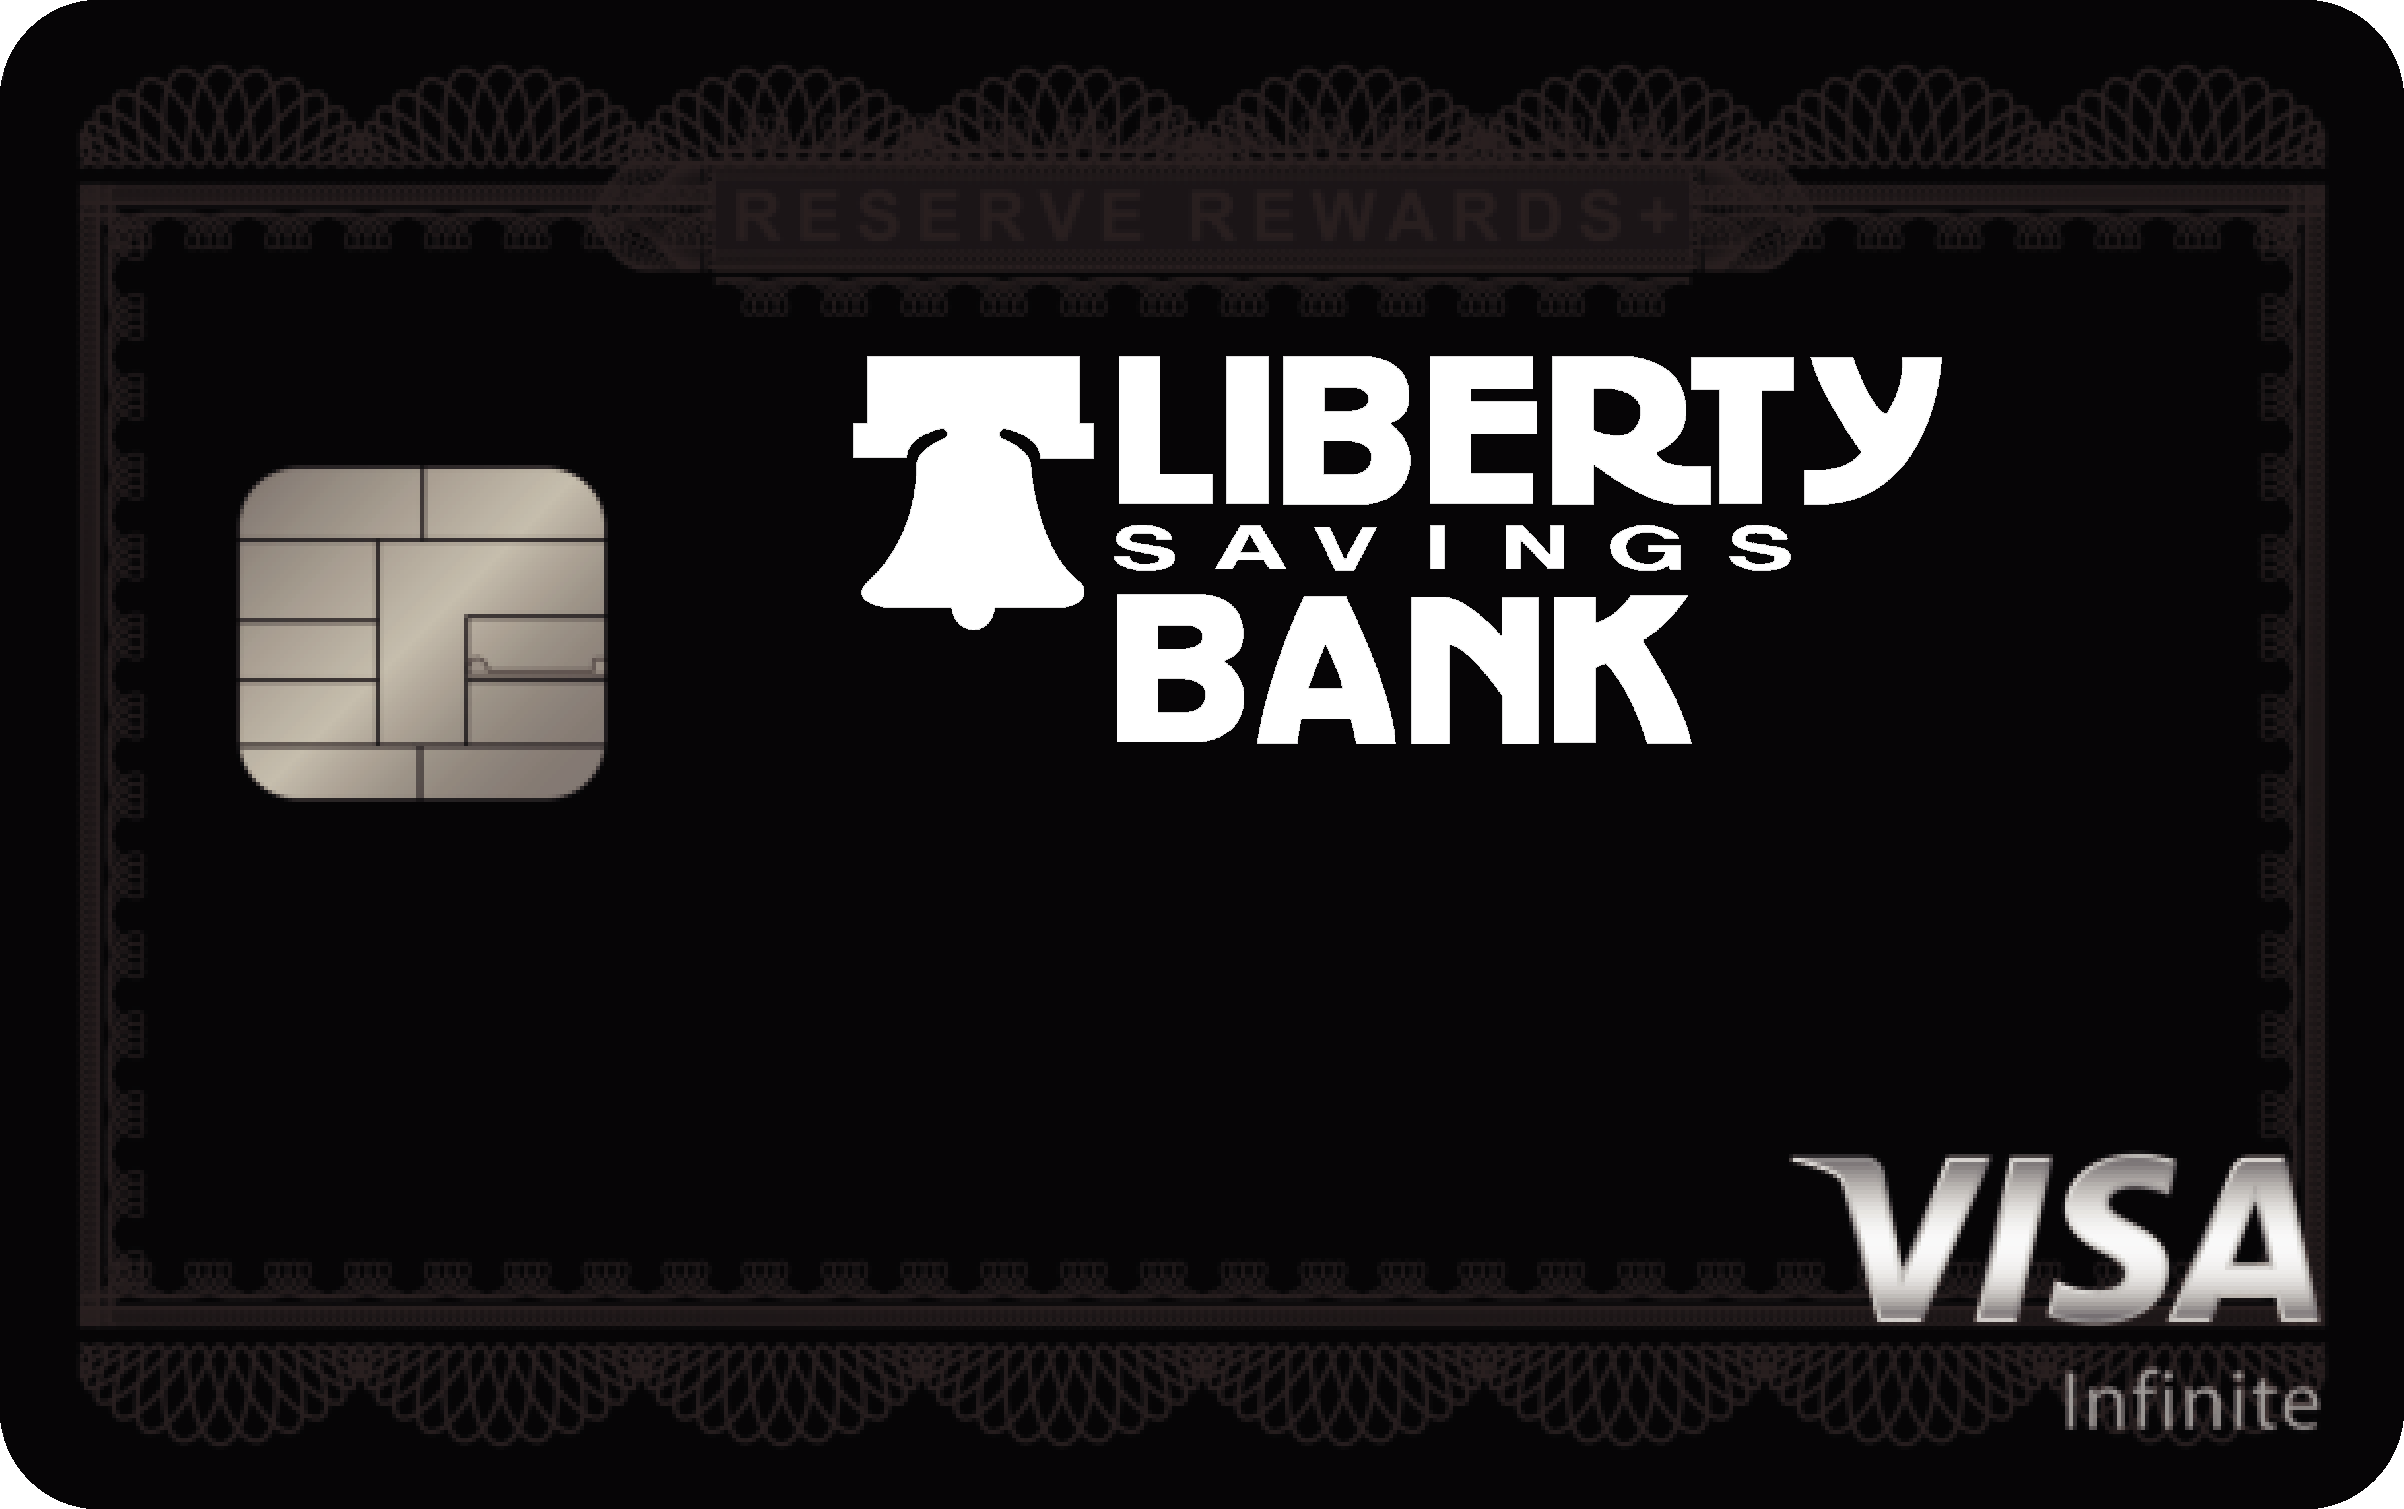 Liberty Savings Bank